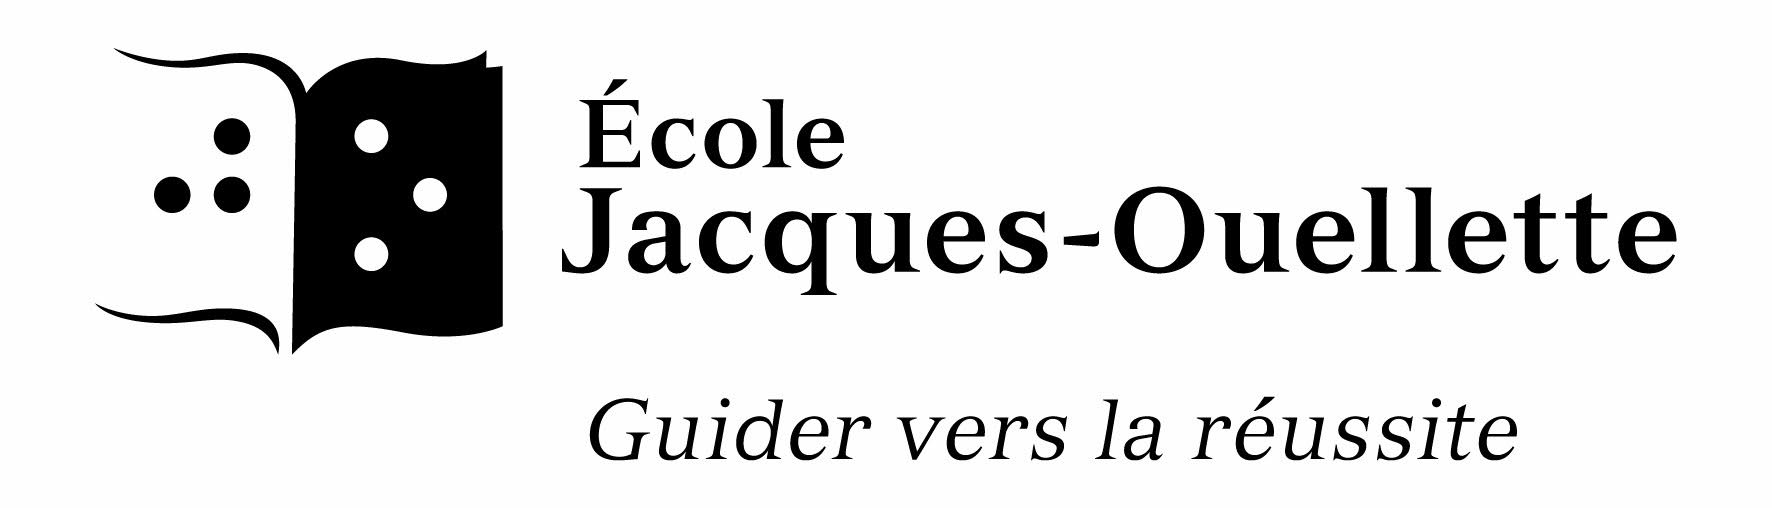 École Jacques-Ouellette - Guider vers la réussite